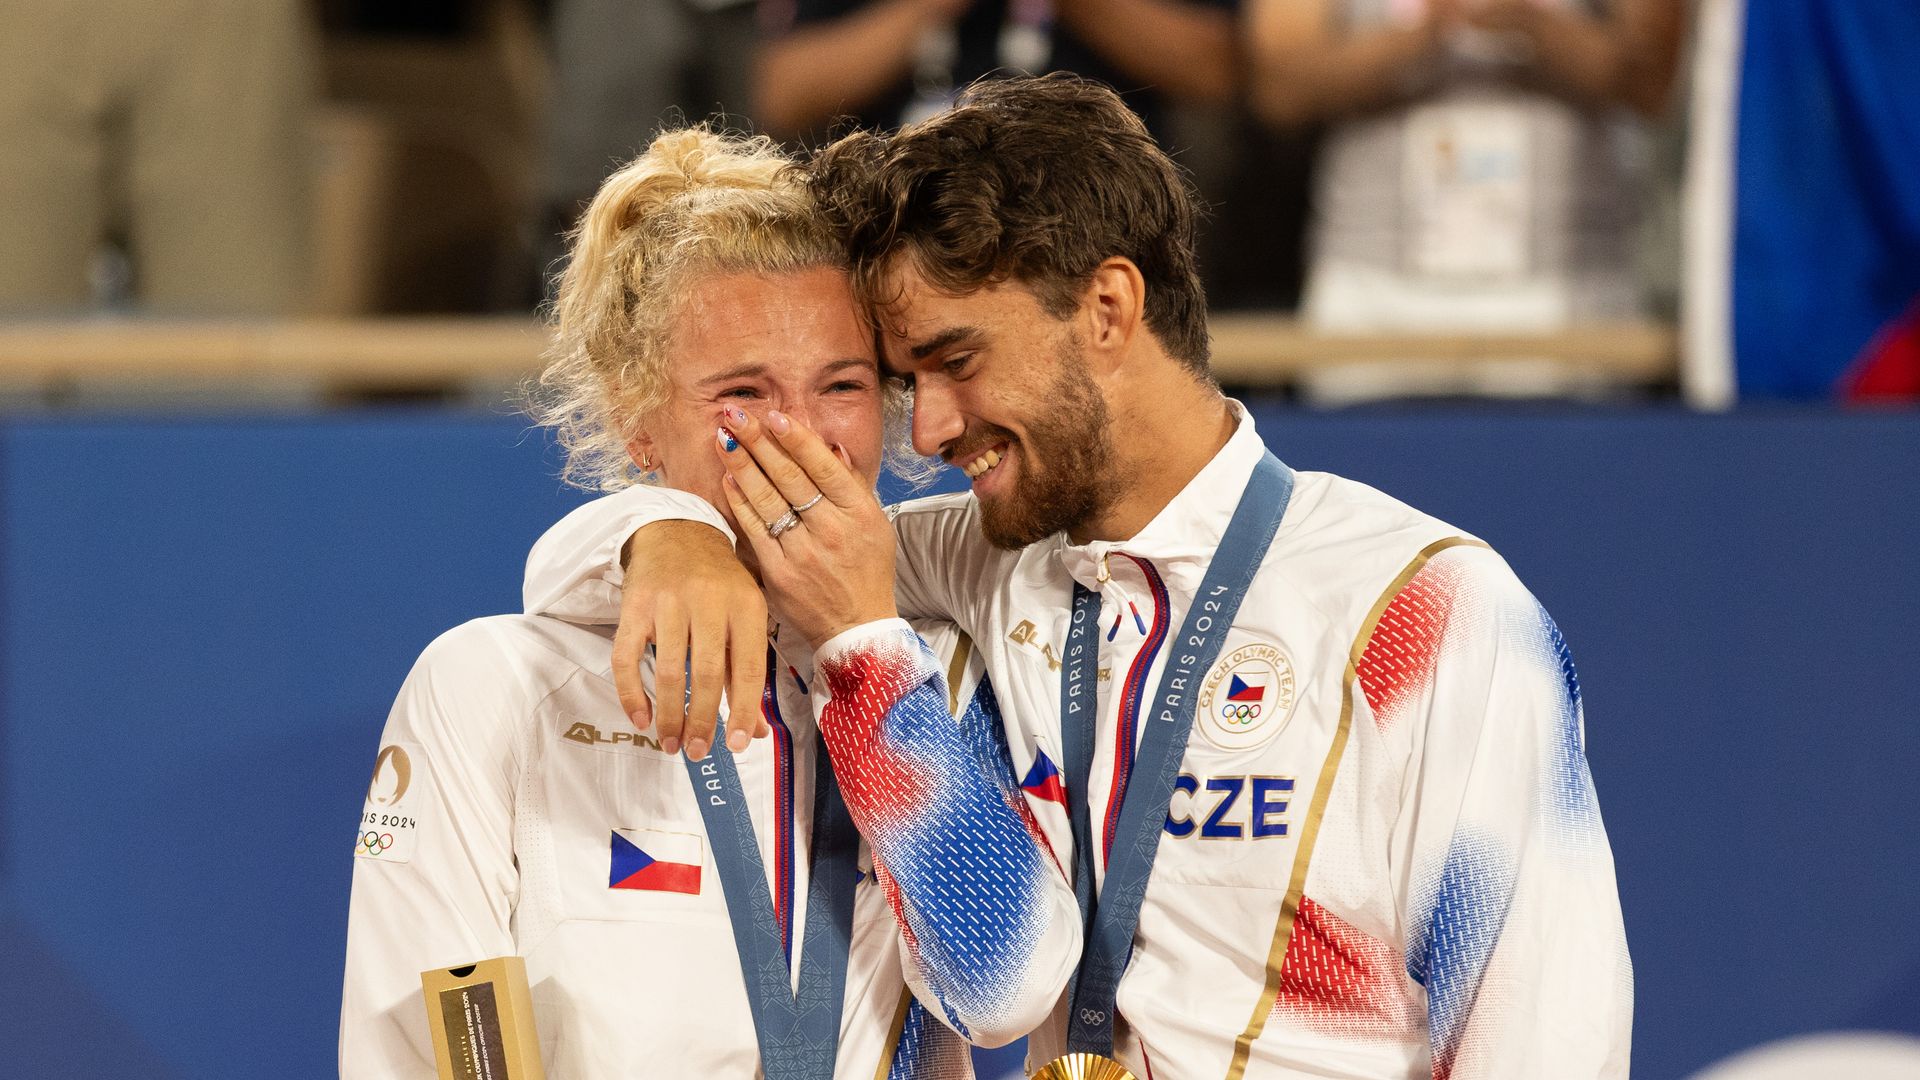 Katerina Siniakova y Tomas Machac ganan el oro juntos tras romper sentimentalmente poco antes de los Juegos